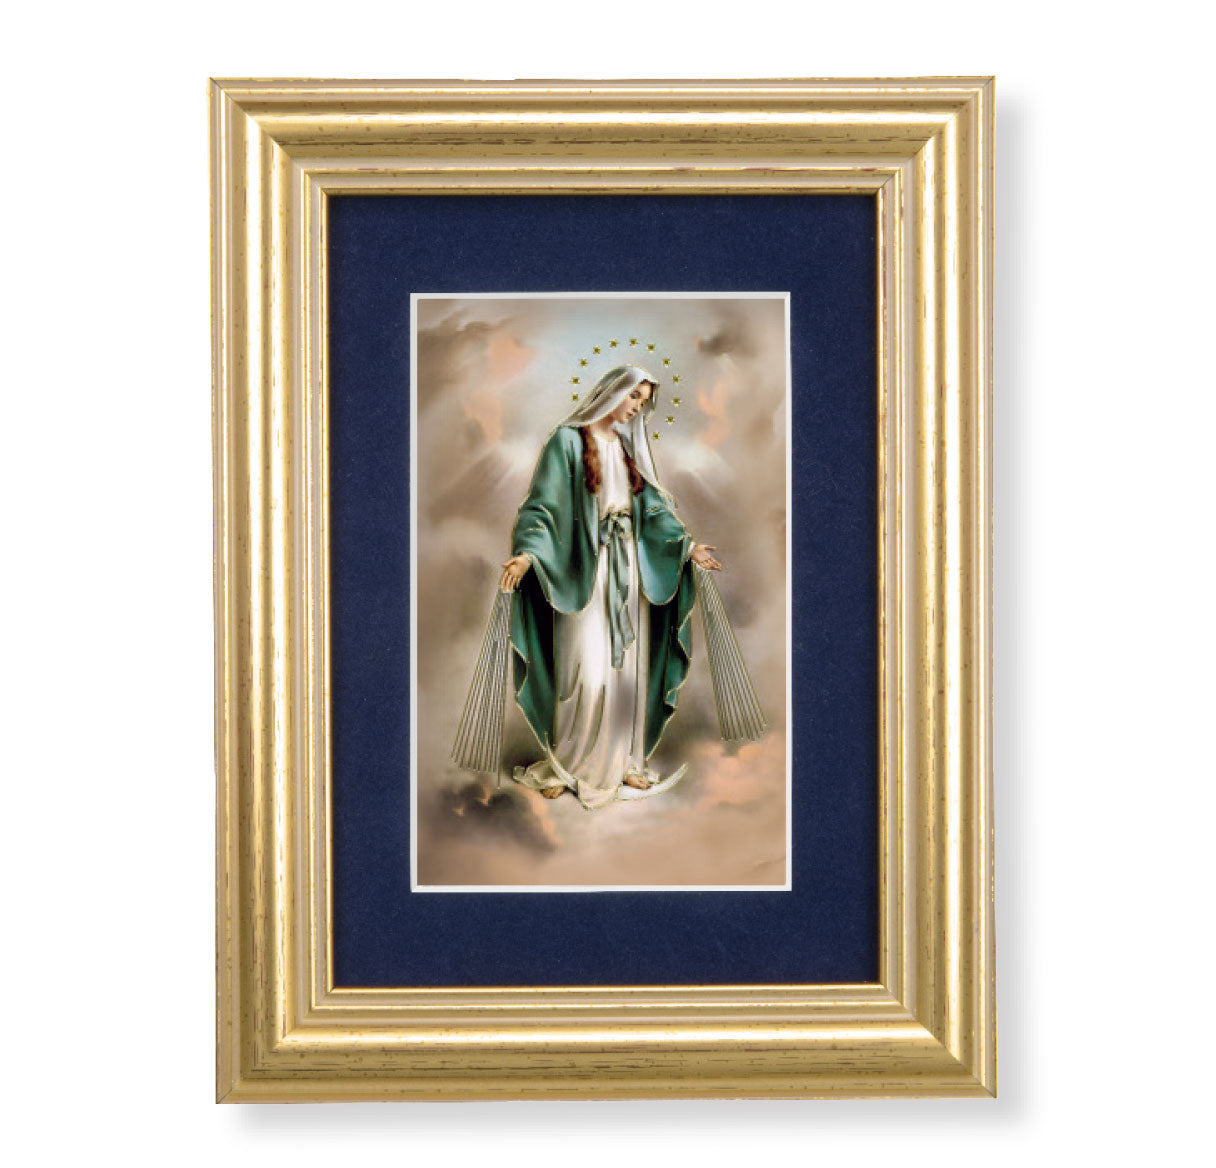 Our Lady of Grace Gold Framed Art with Blue Velvet Matting